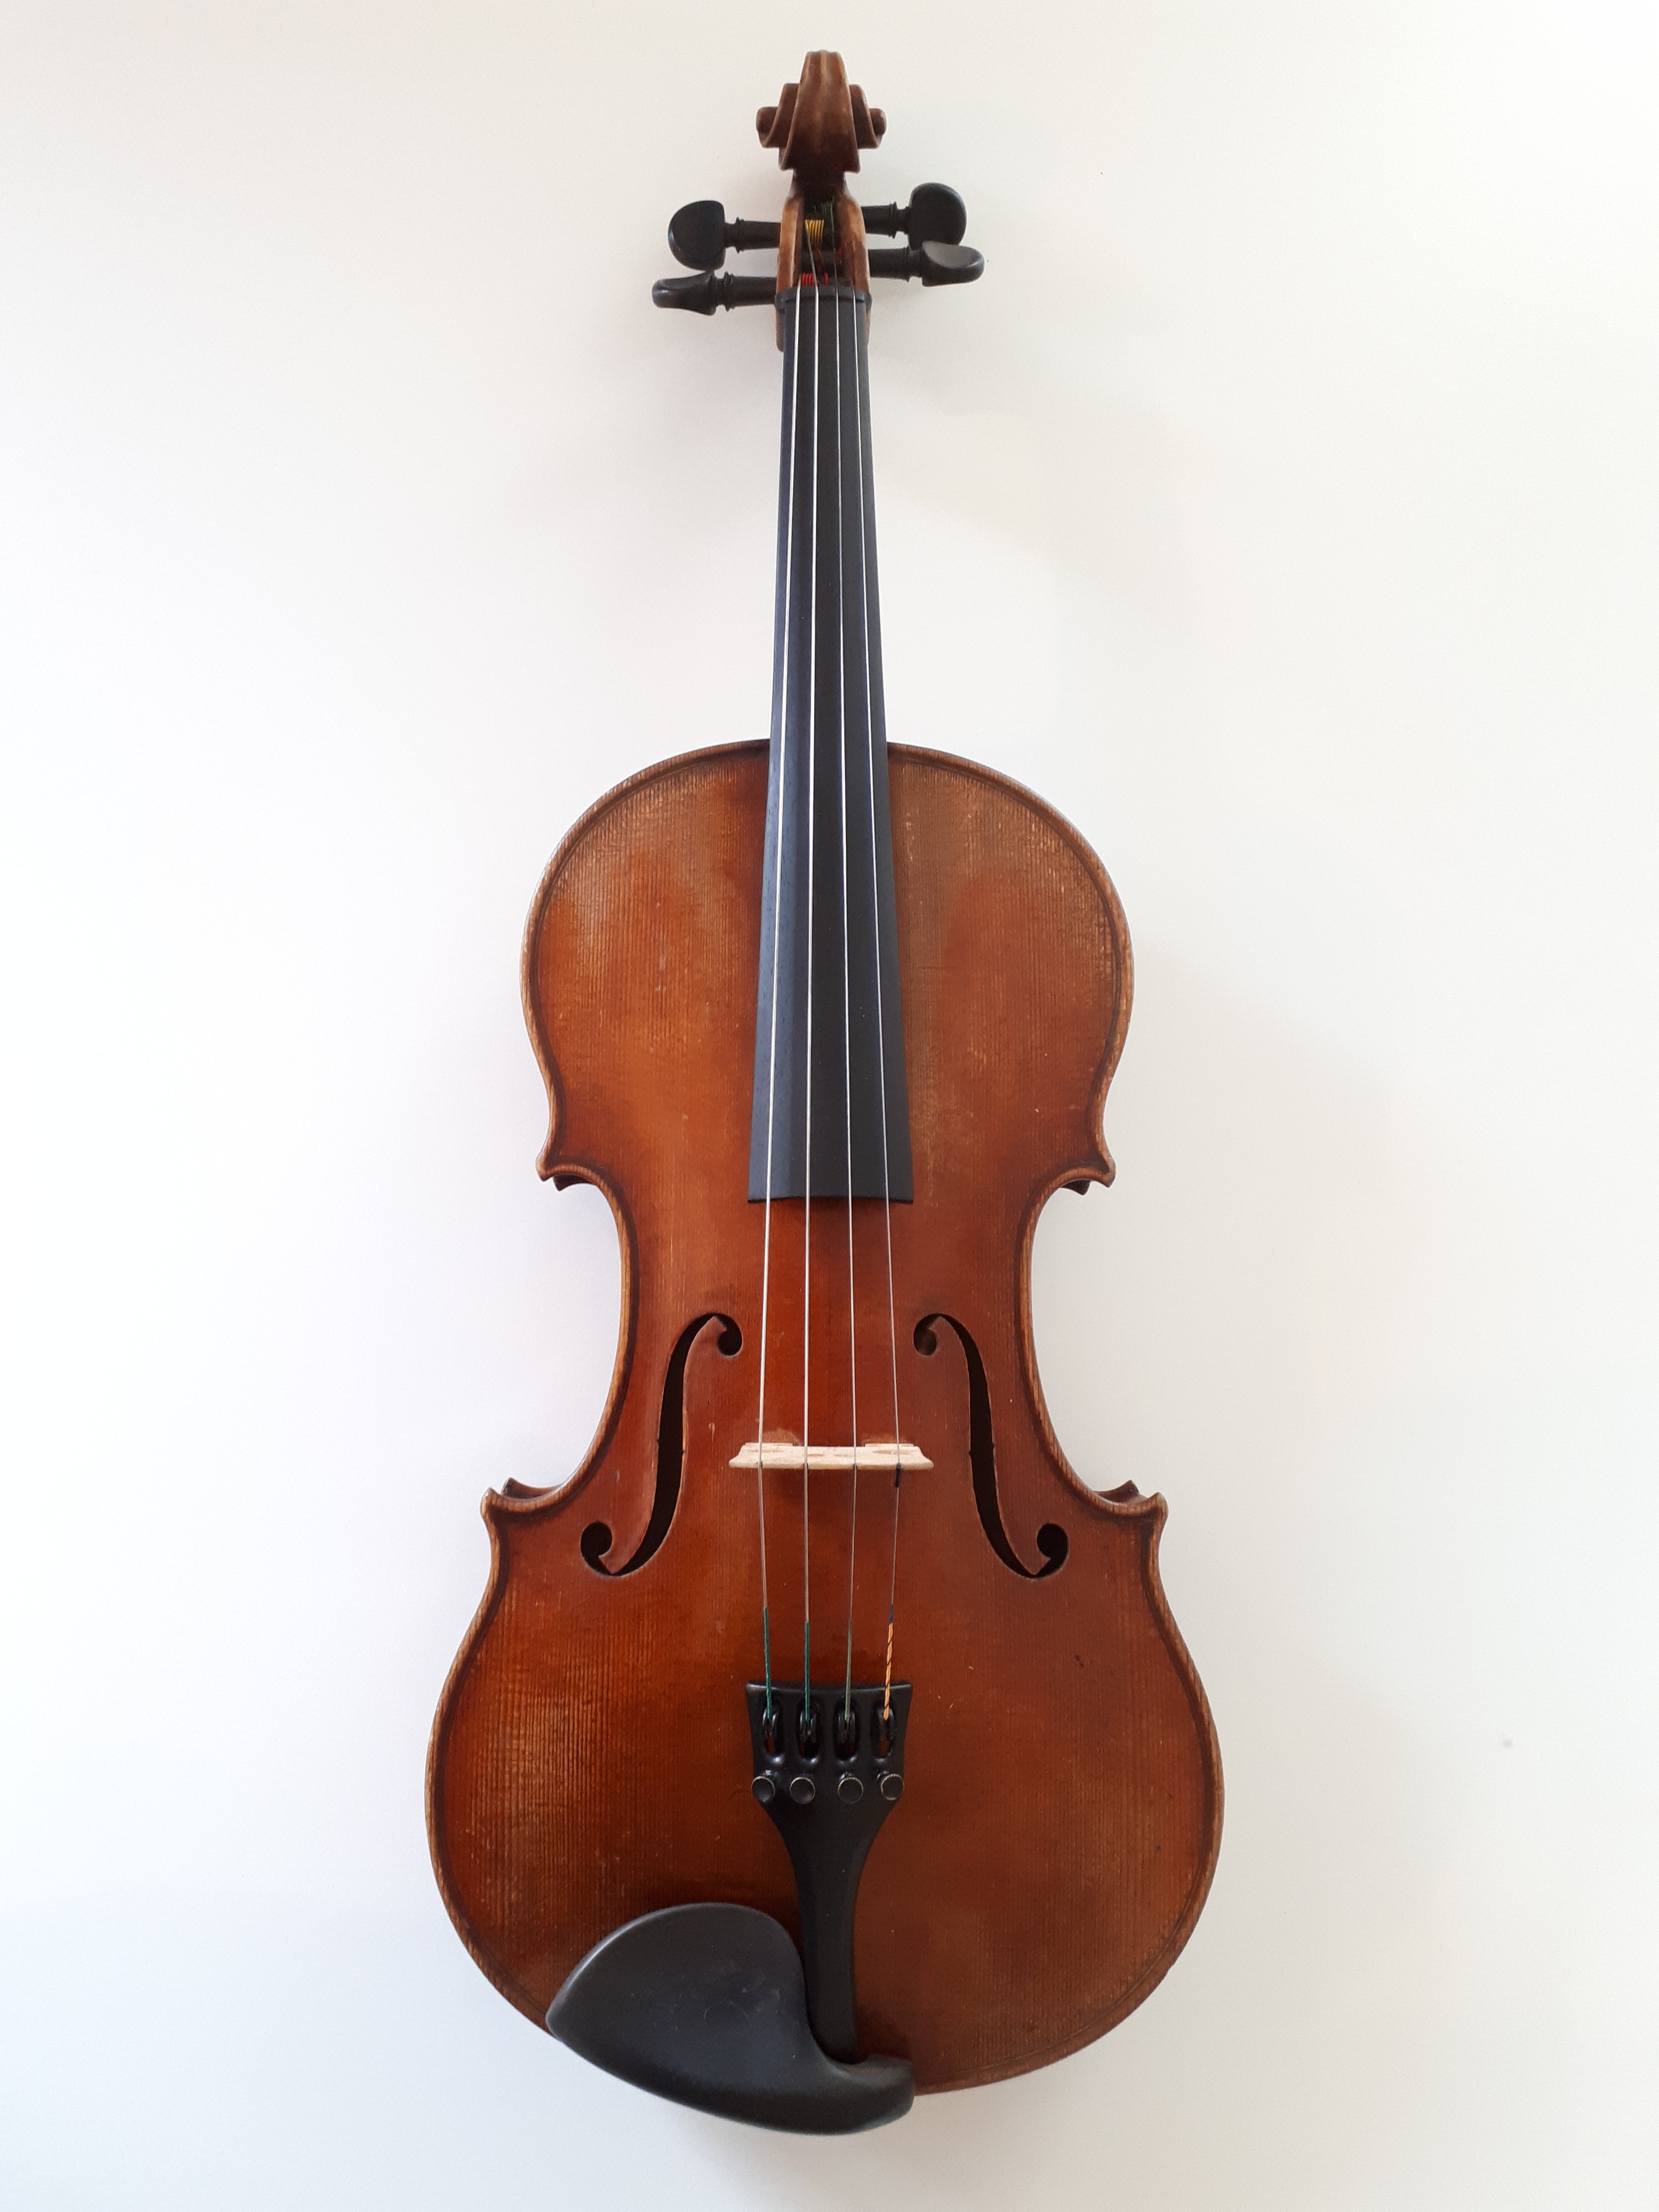 Viola - 100 years old